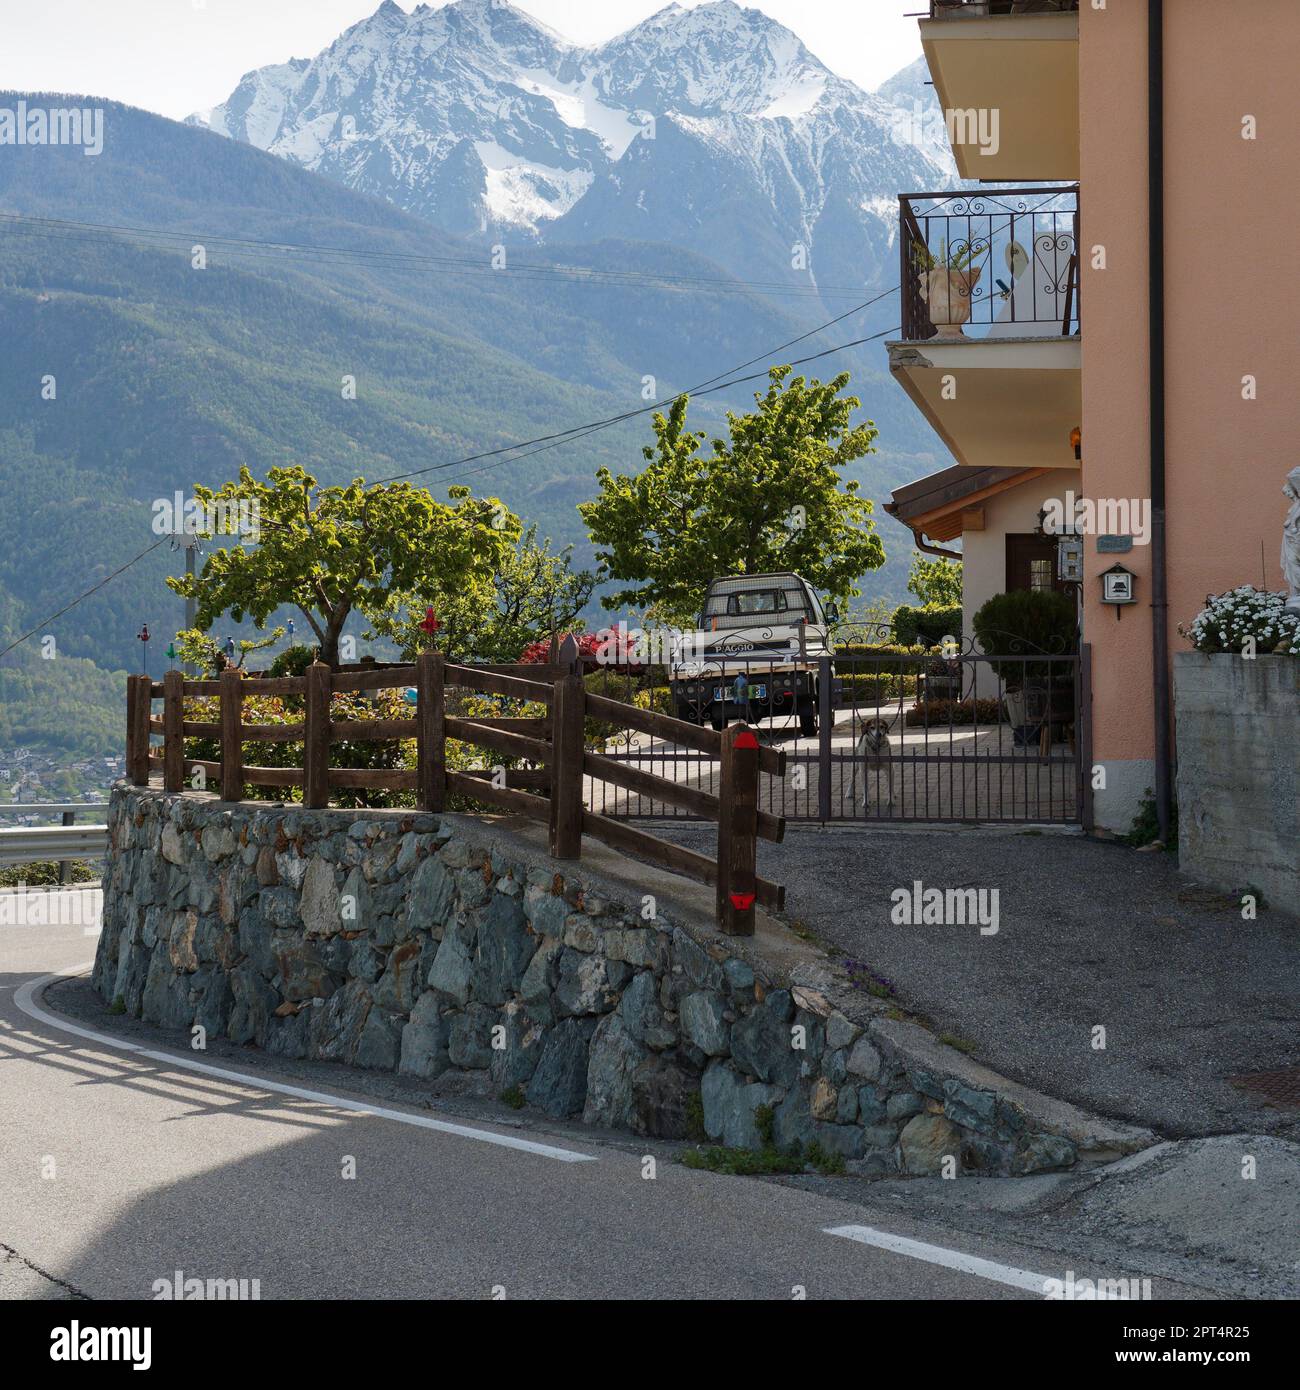 Haus mit Hochsteineinfahrt mit Ape-Auto, Hund und Balkon. Schneebedeckte alpine Berge dahinter. Aosta Valley, NW Italien Stockfoto